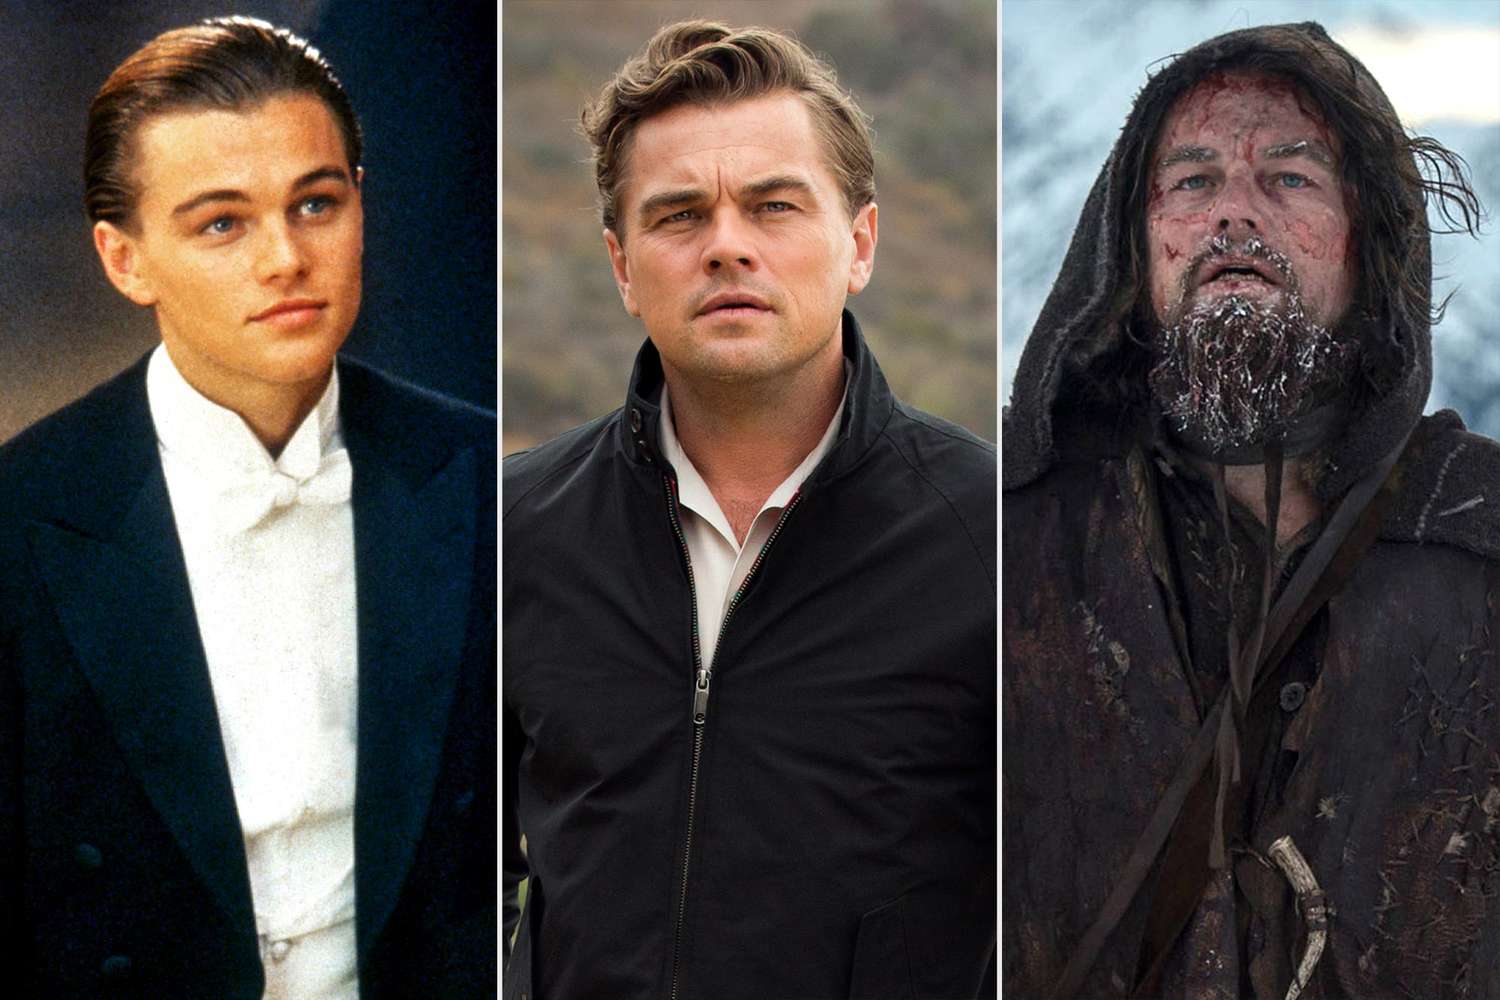 Every Leonardo DiCaprio movie performance, ranked | EW.com